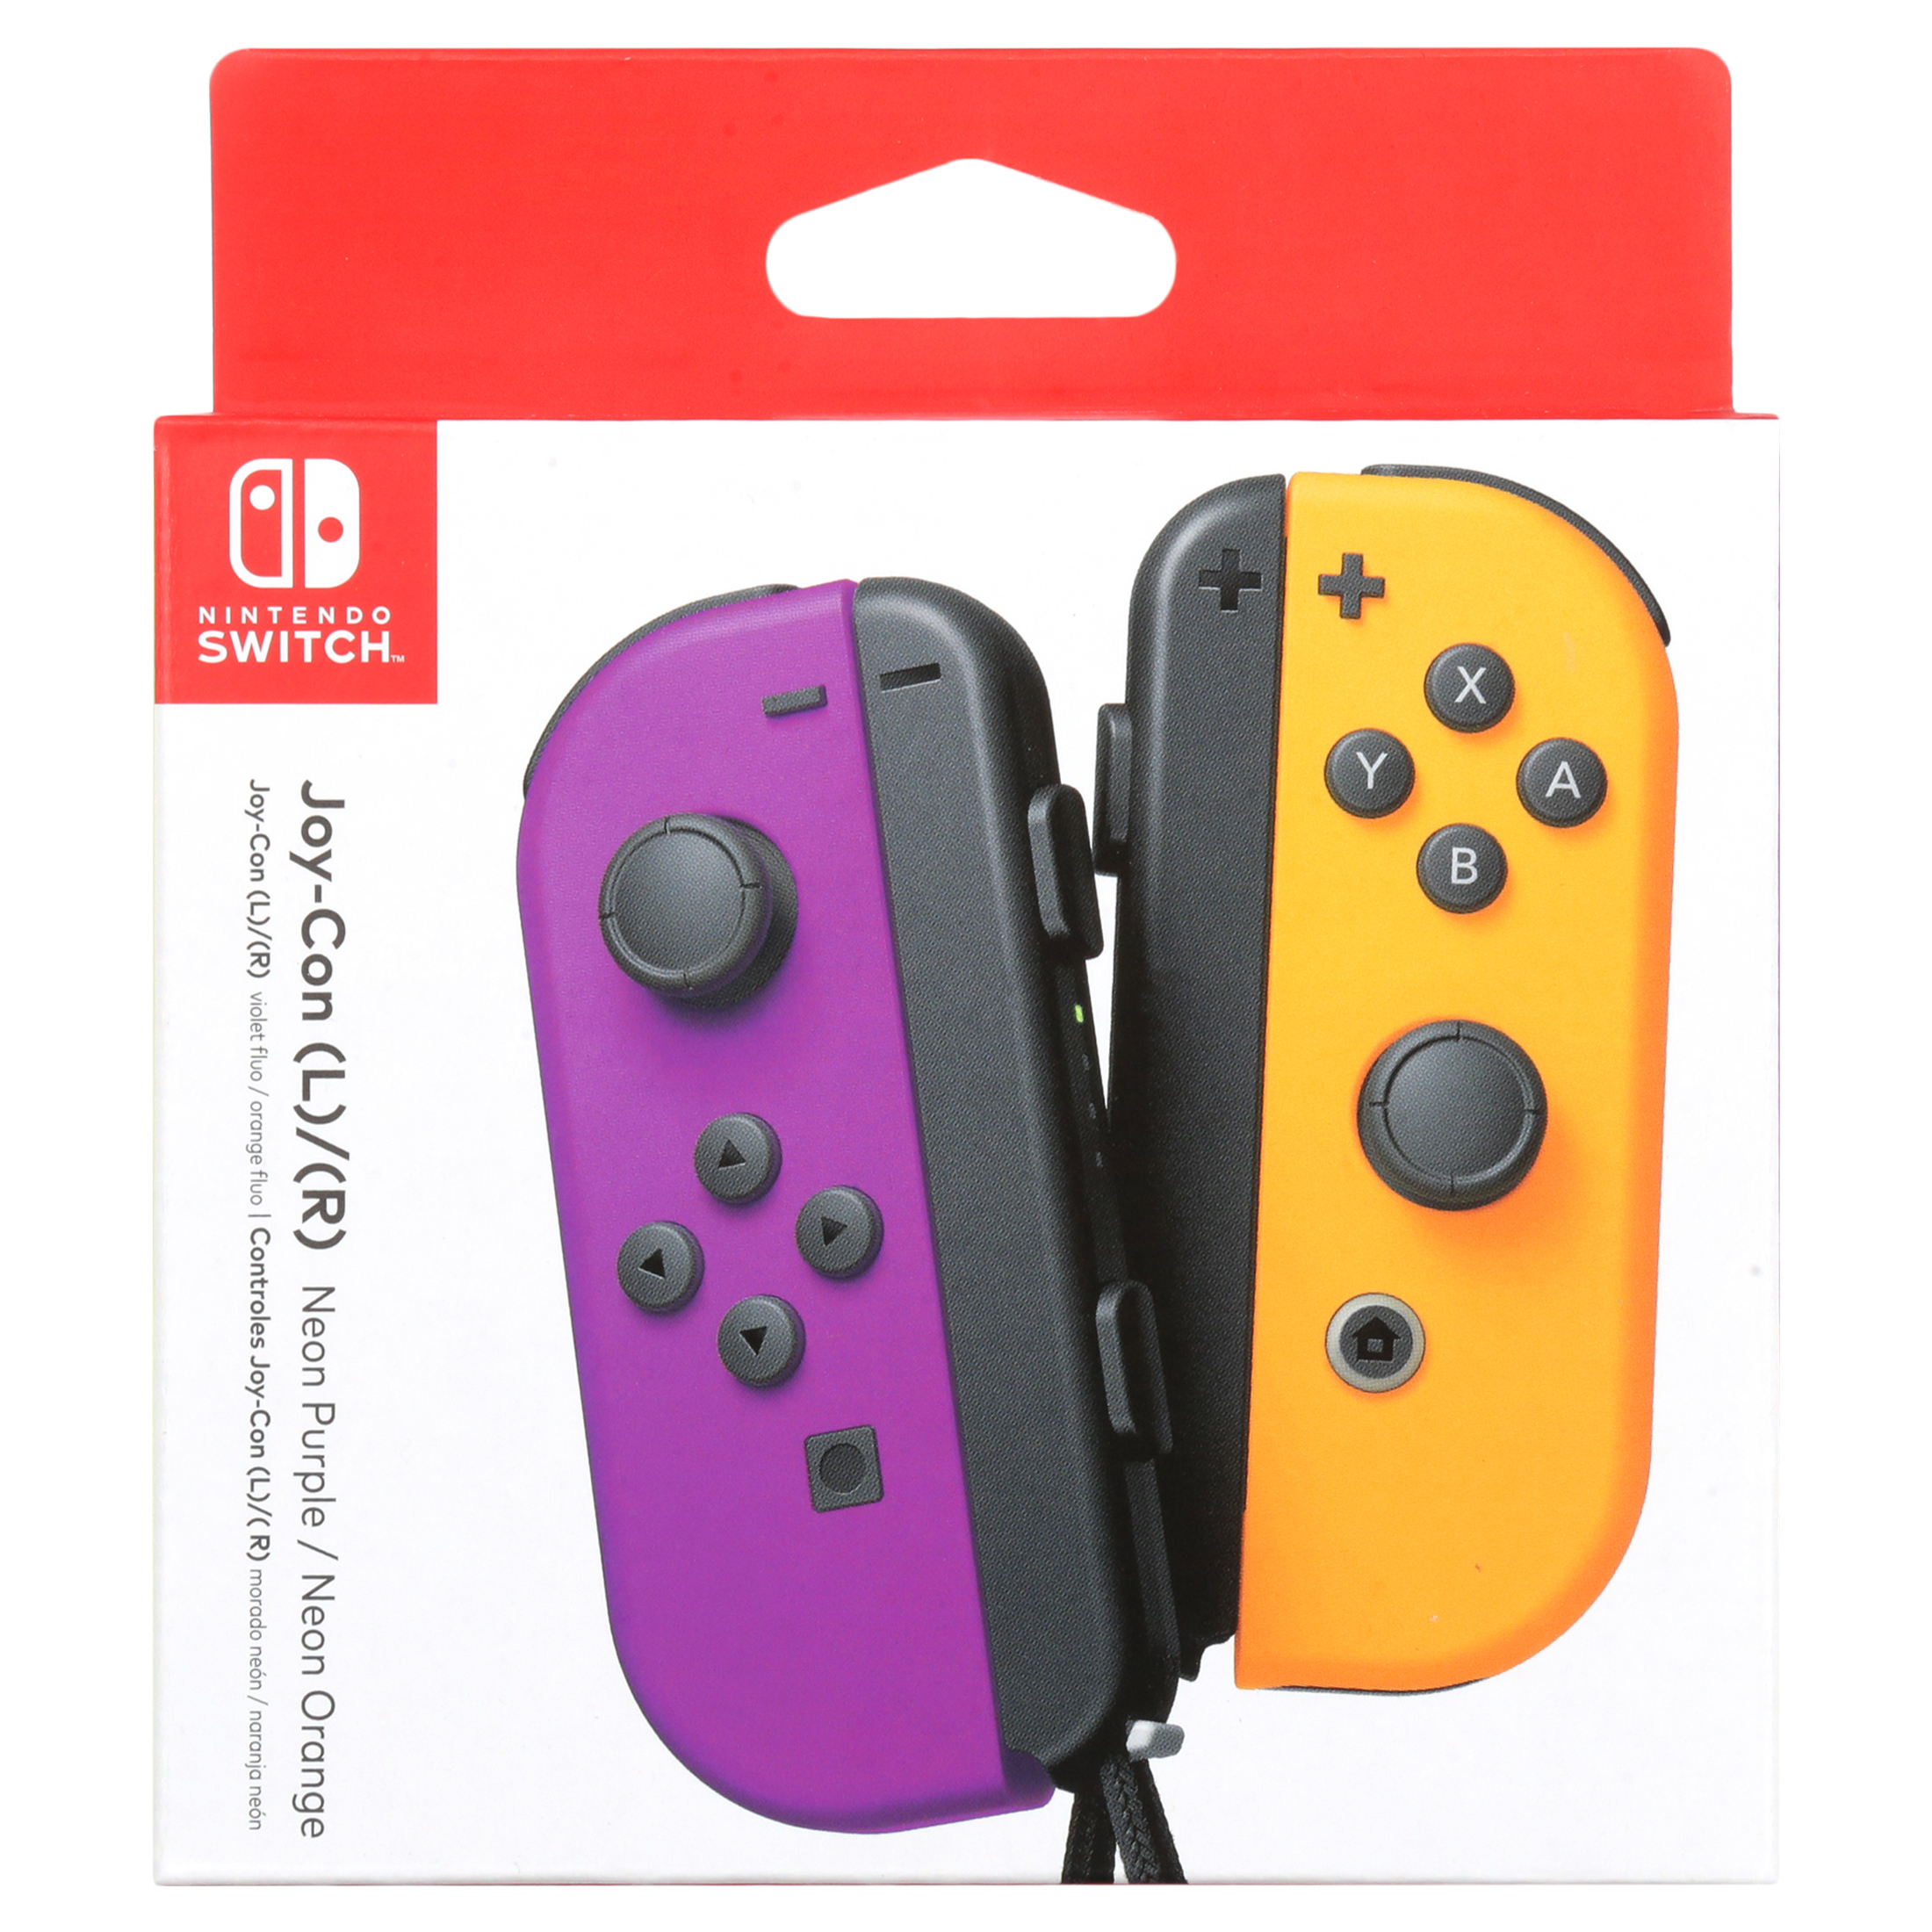 Nintendo Switch Joy-Con Pair, Neon Purple and Neon Orange - image 5 of 7